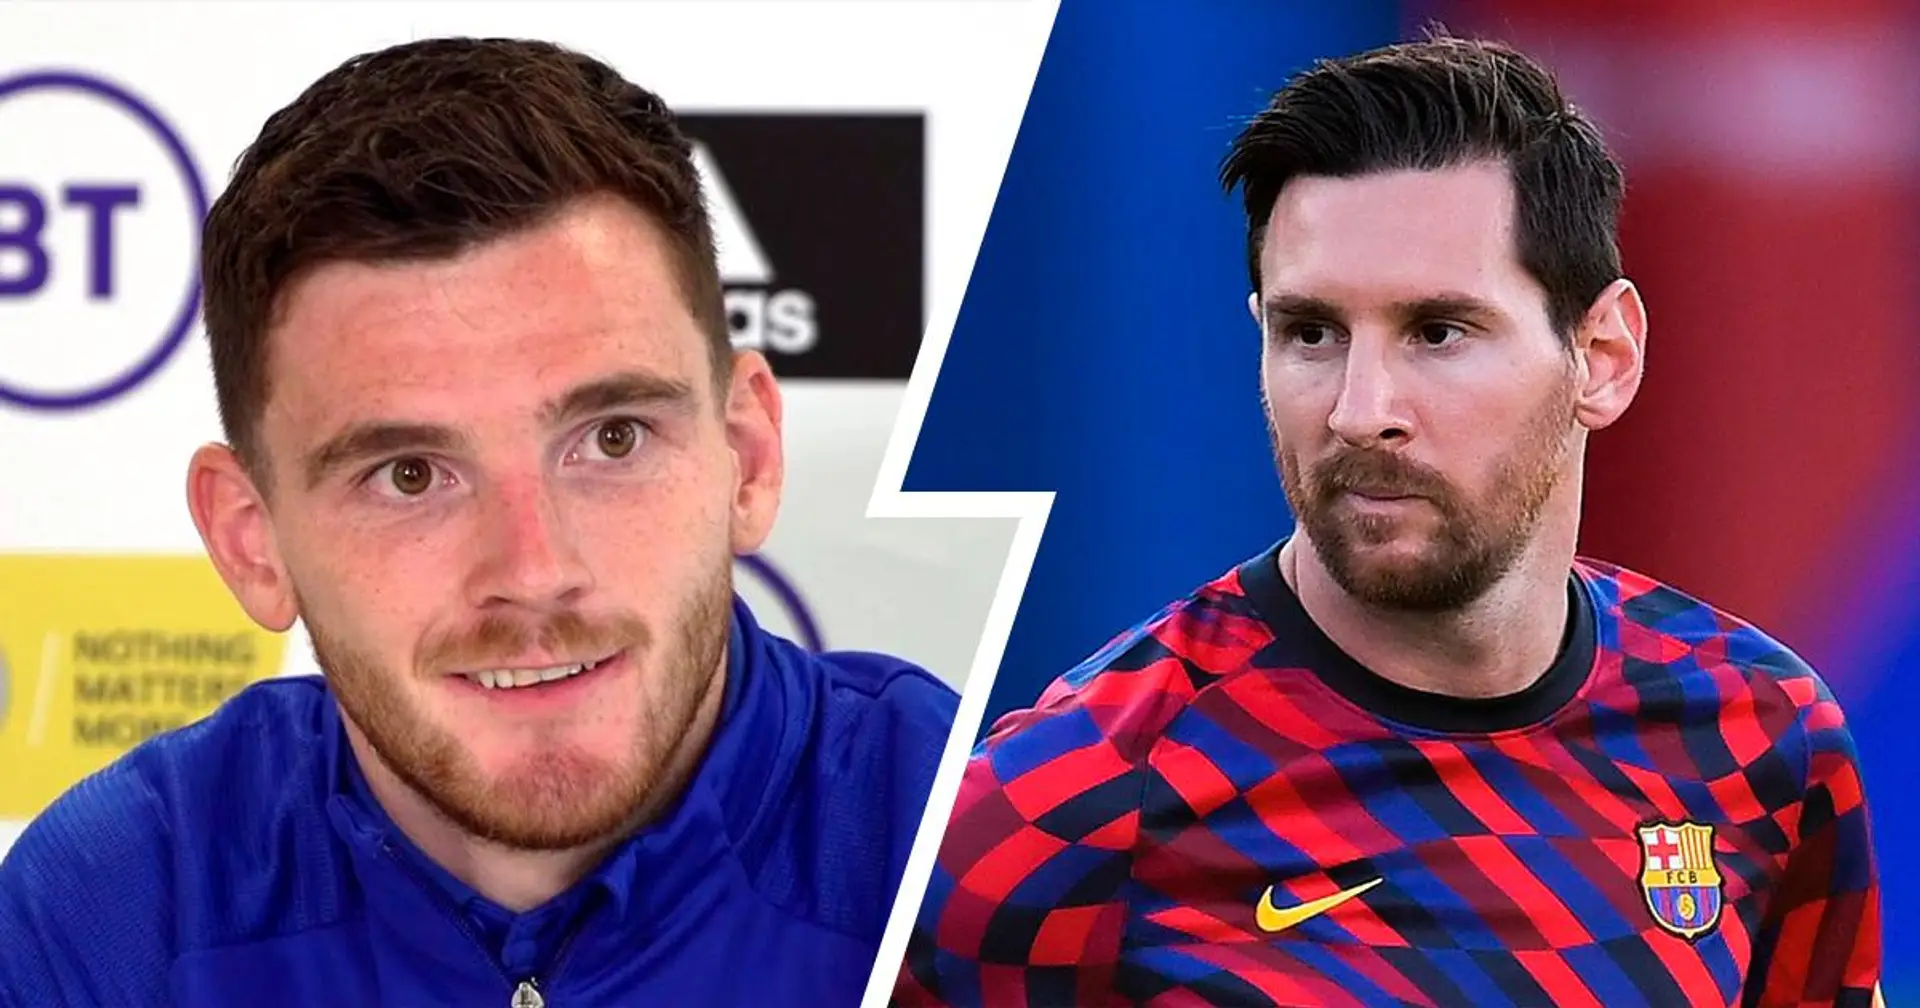 "Mentalement, c'est fatiguant": Andy Robertson explique pourquoi il est incroyablement difficile de jouer contre Messi